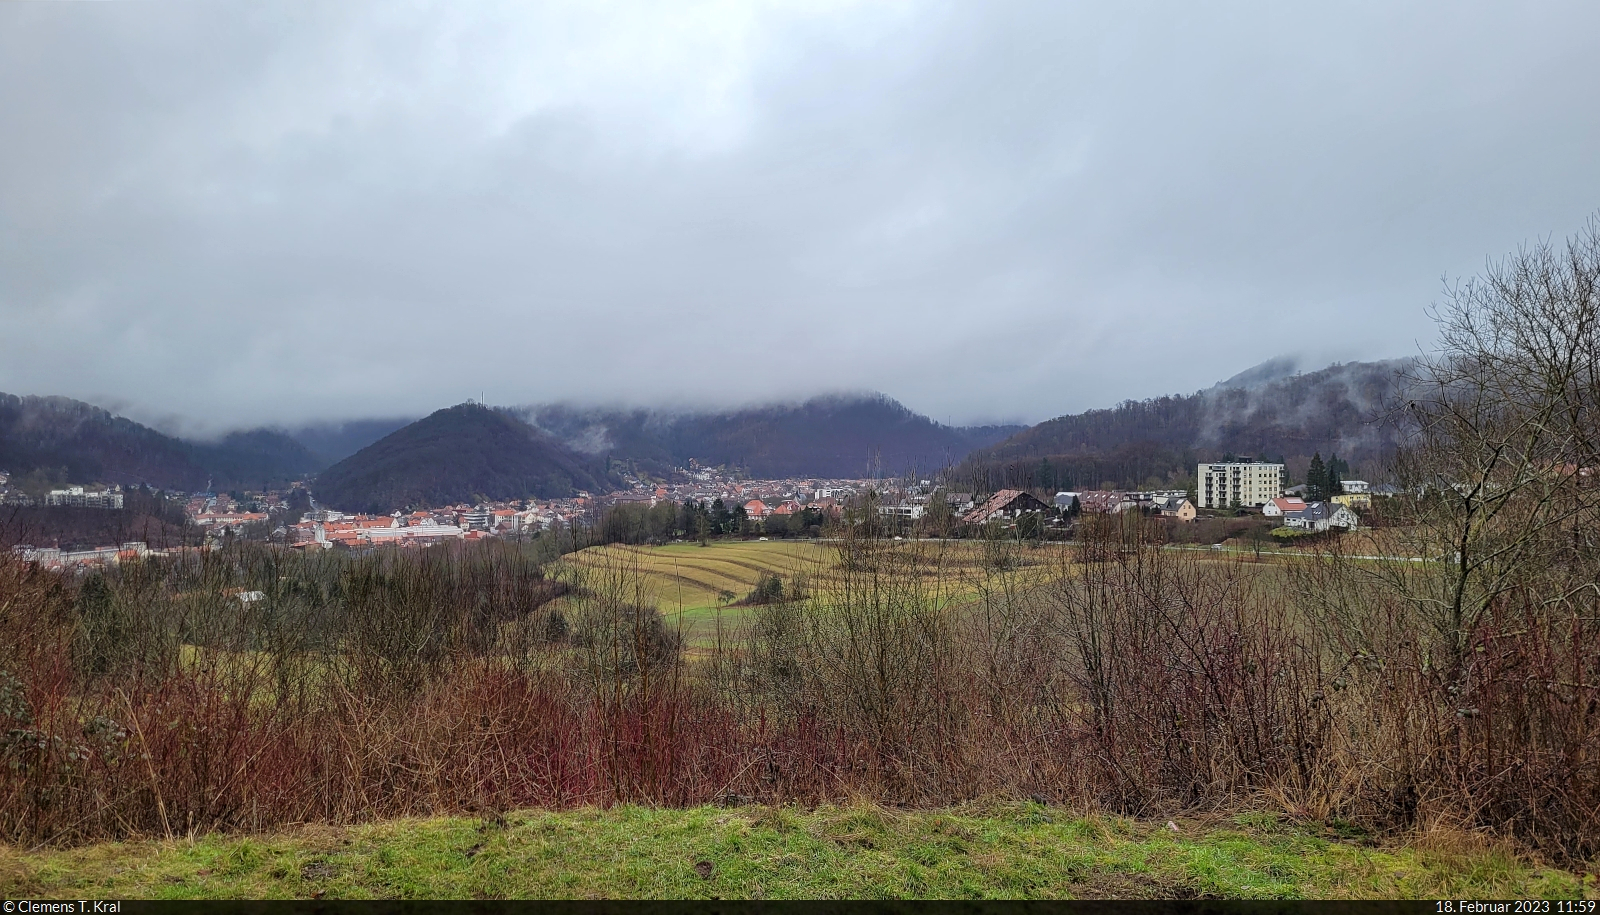 Wechselnde Sichtverhältnisse (2/3):
Nachdem sich der Schauer über Bad Lauterberg gelegt hat und die letzten Regenwolken weiterziehen, kann man vom Brockenblick viel besser auf die Stadt schauen.

🕓 18.2.2023 | 11:59 Uhr